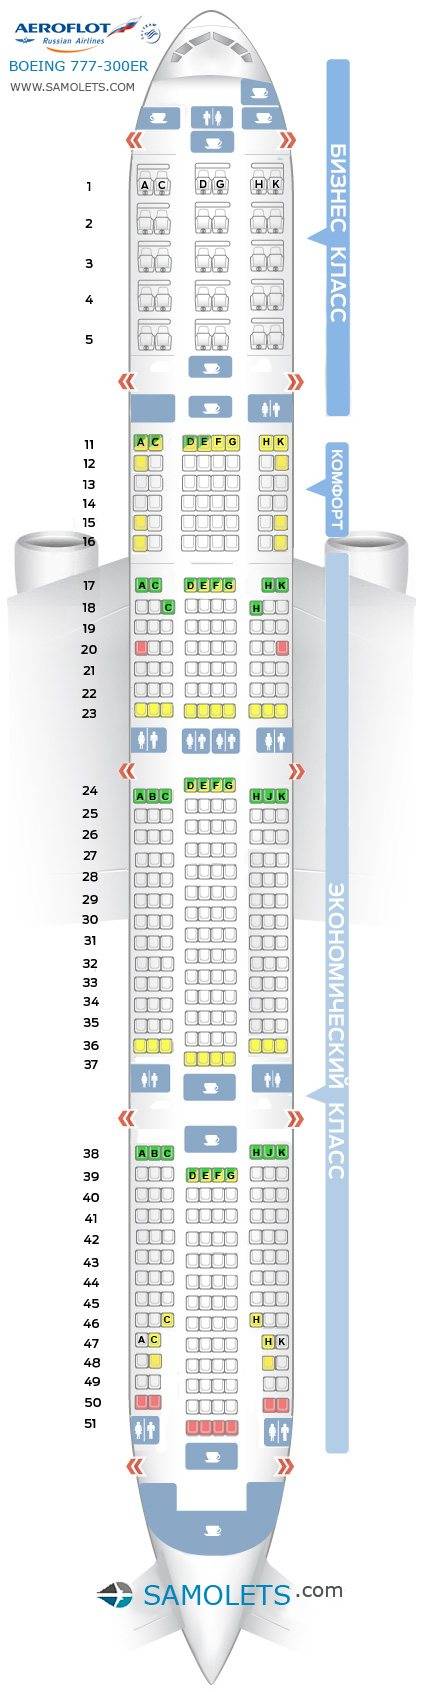 Схема салона и лучшие места boeing 777-300 россия | авиакомпании и авиалинии россии и мира